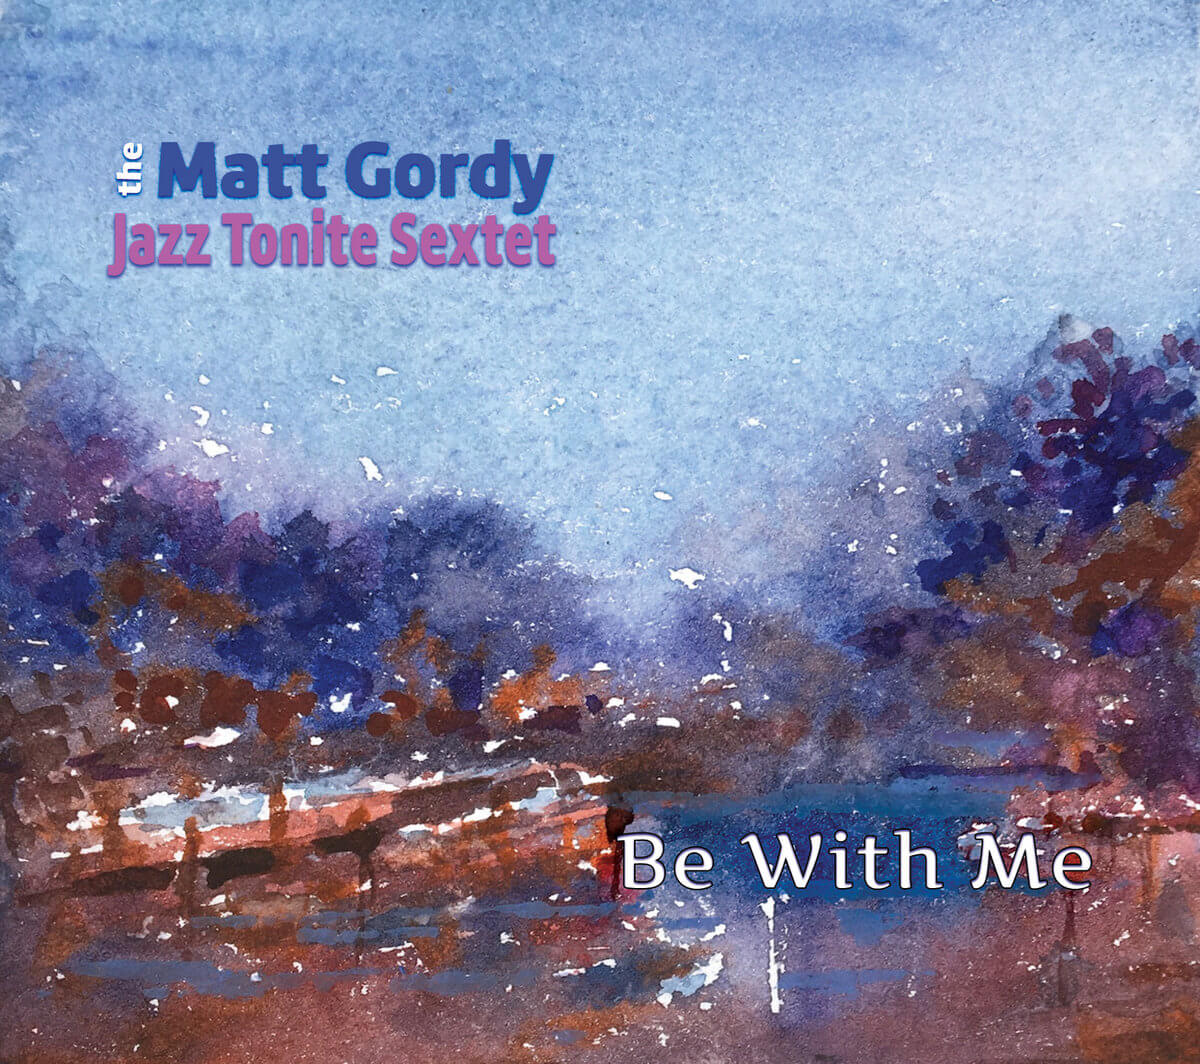 Vivacious versatile jazz joy Matt Gordy